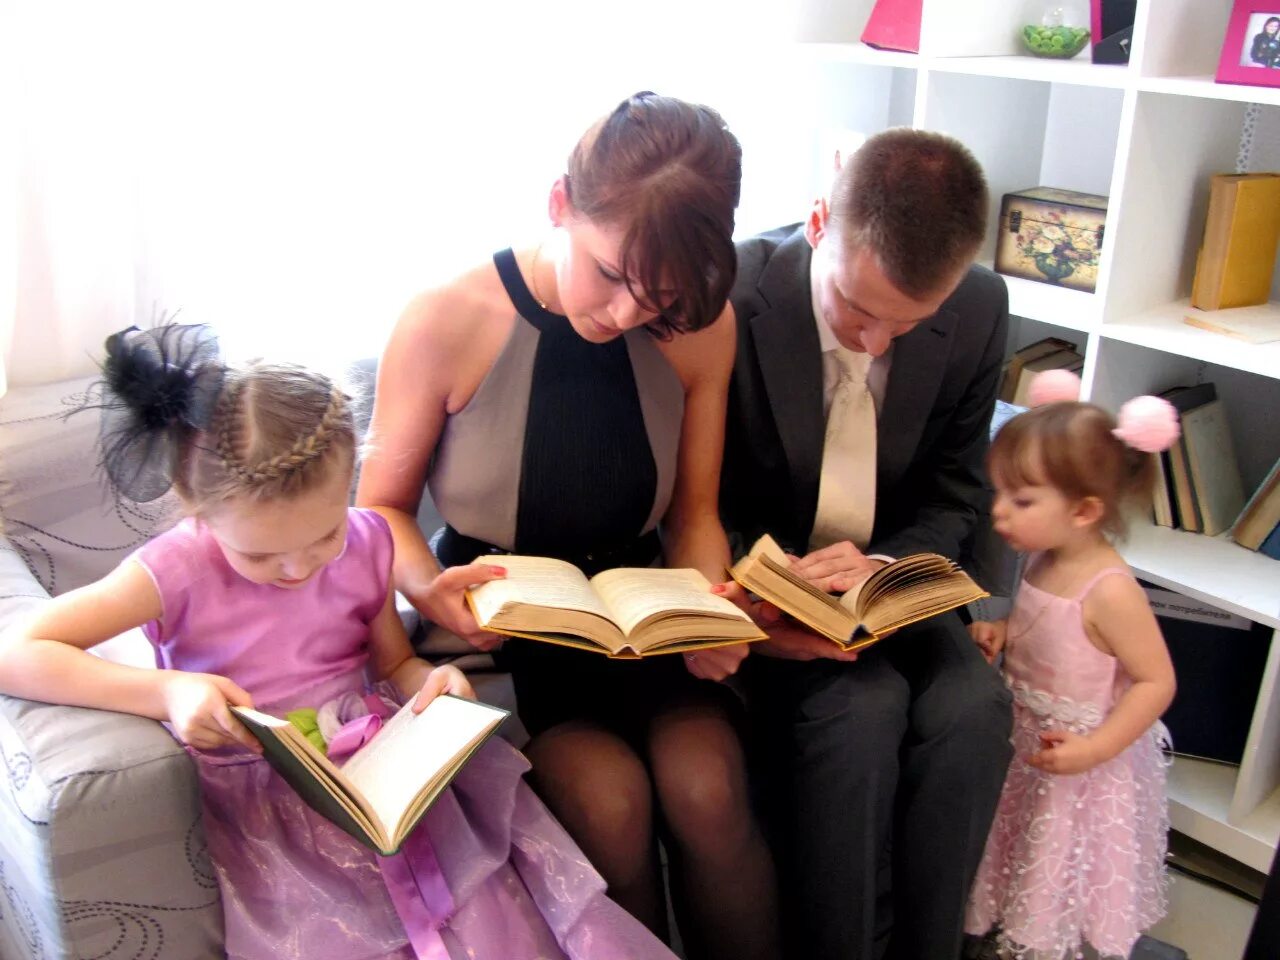 Статья читающая семья. Чтение книг семьей. Семейное чтение в библиотеке. Читающая семья. Круг семейного чтения.